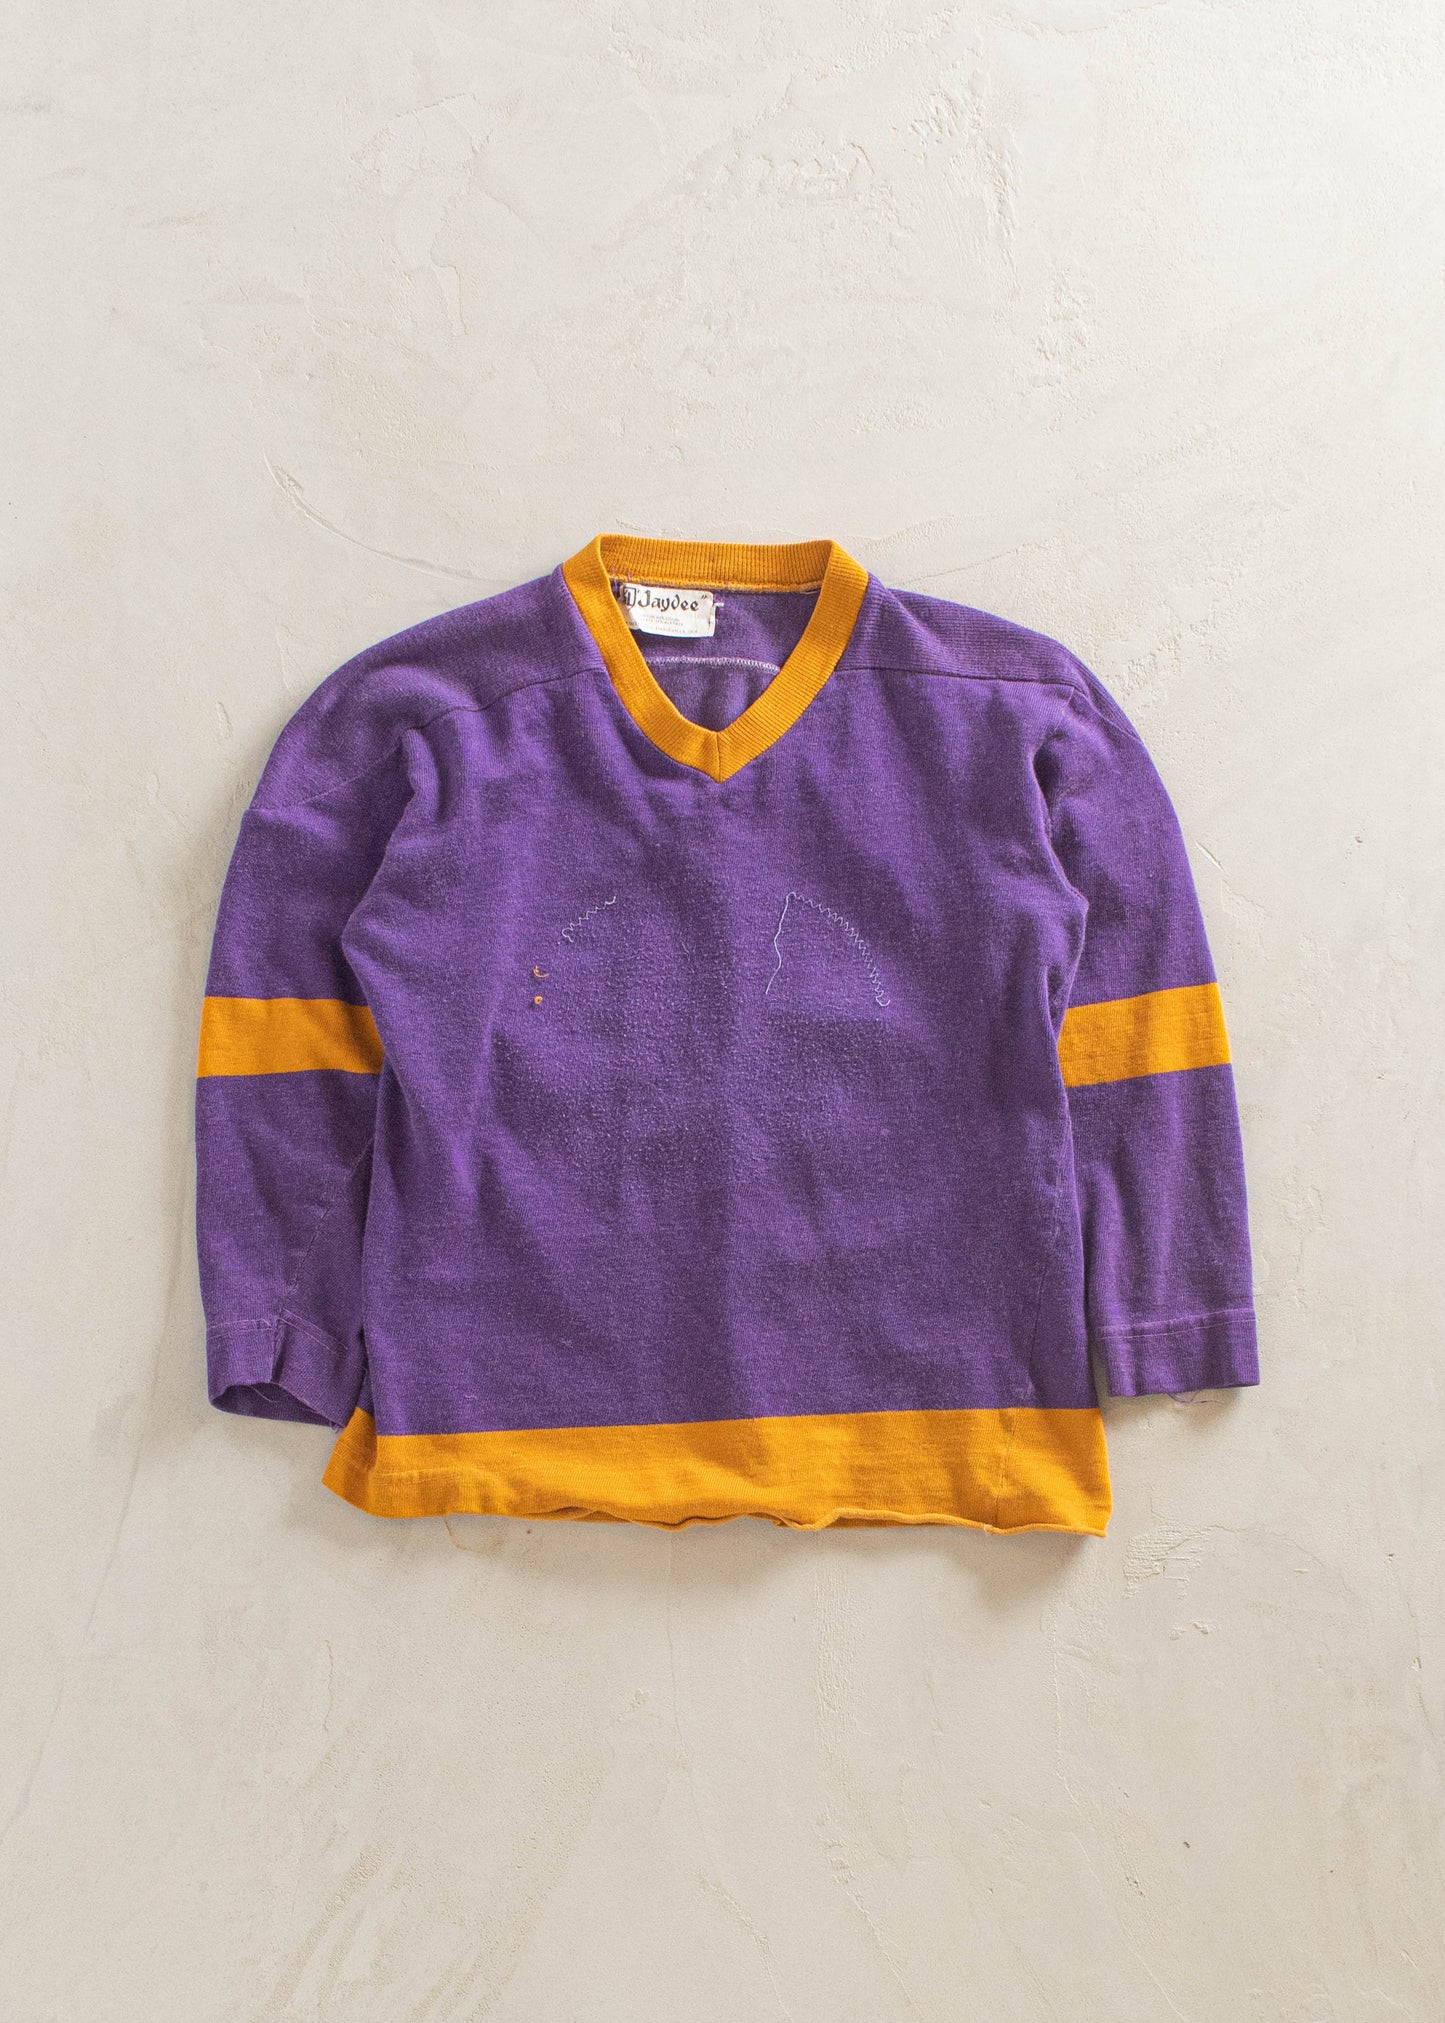 1980s Jaydee Knitters Ltd 3/4 Sleeve Sport Jersey Size XS/S